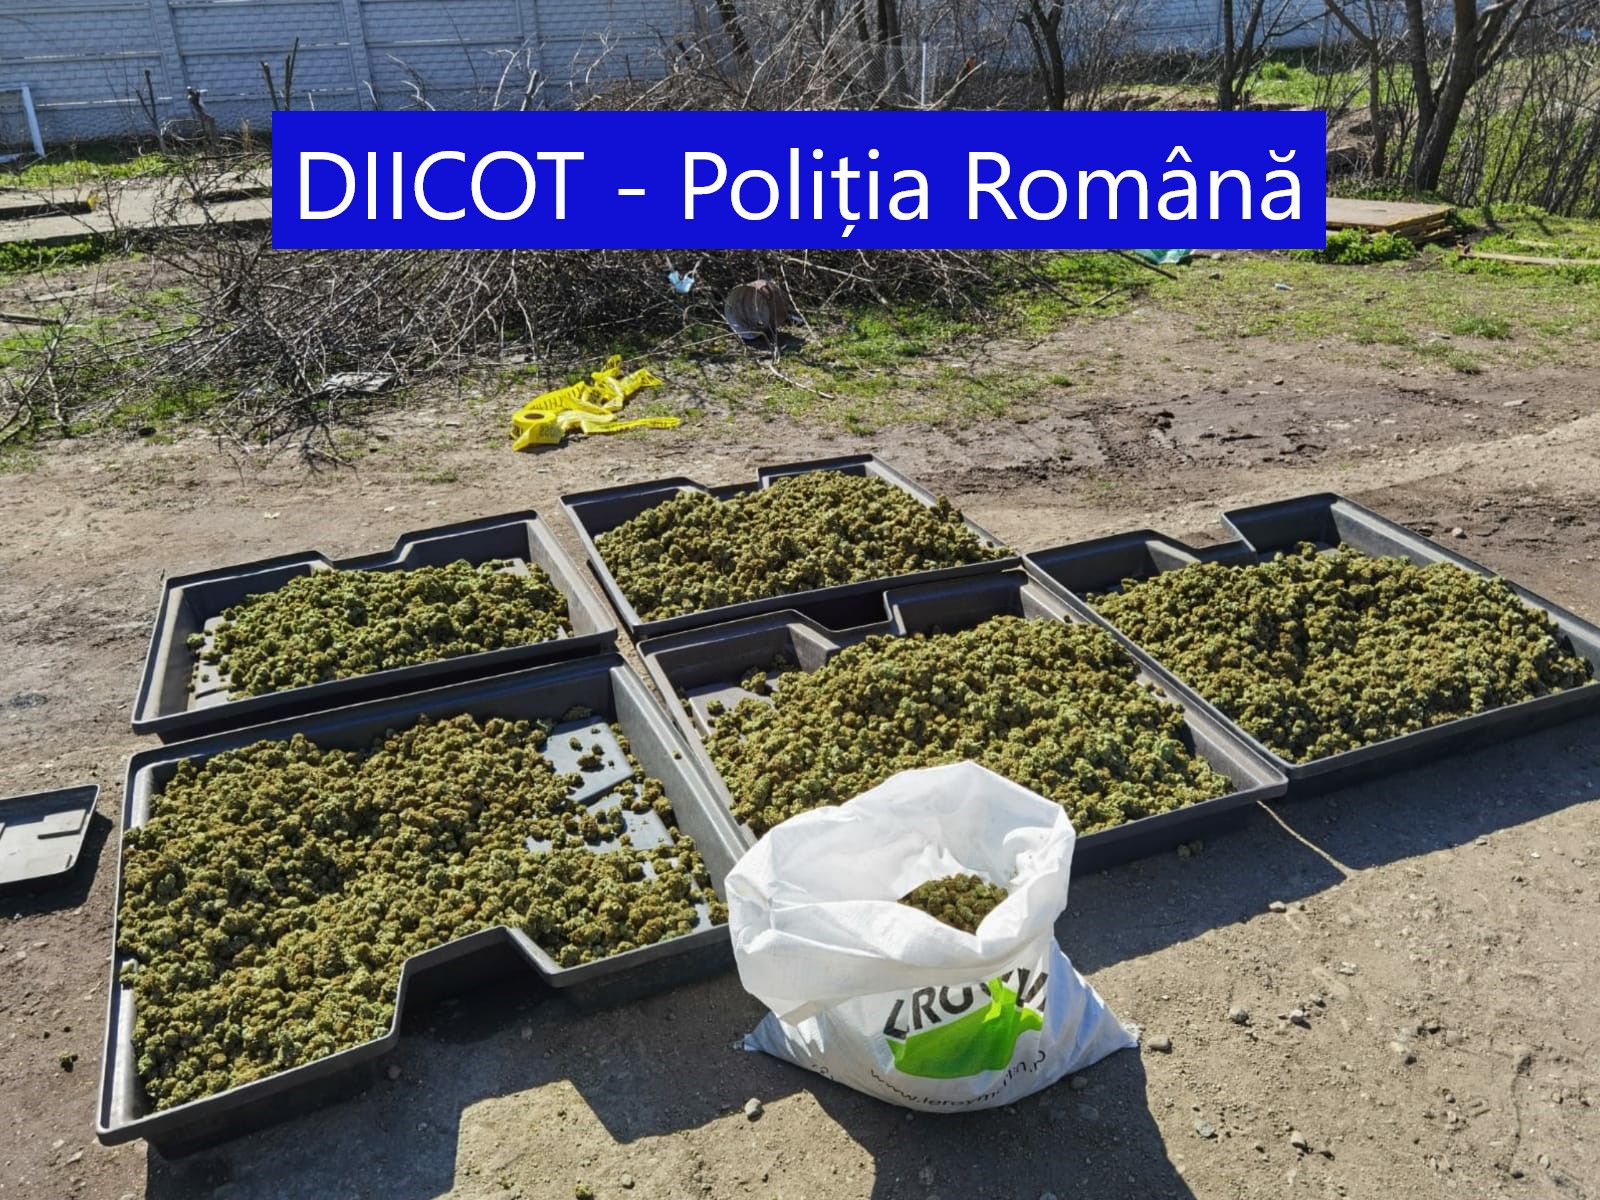 Cantitate uriașă de droguri descoperită în Dolj. Doi spanioli au fost arestați - Imaginea 1